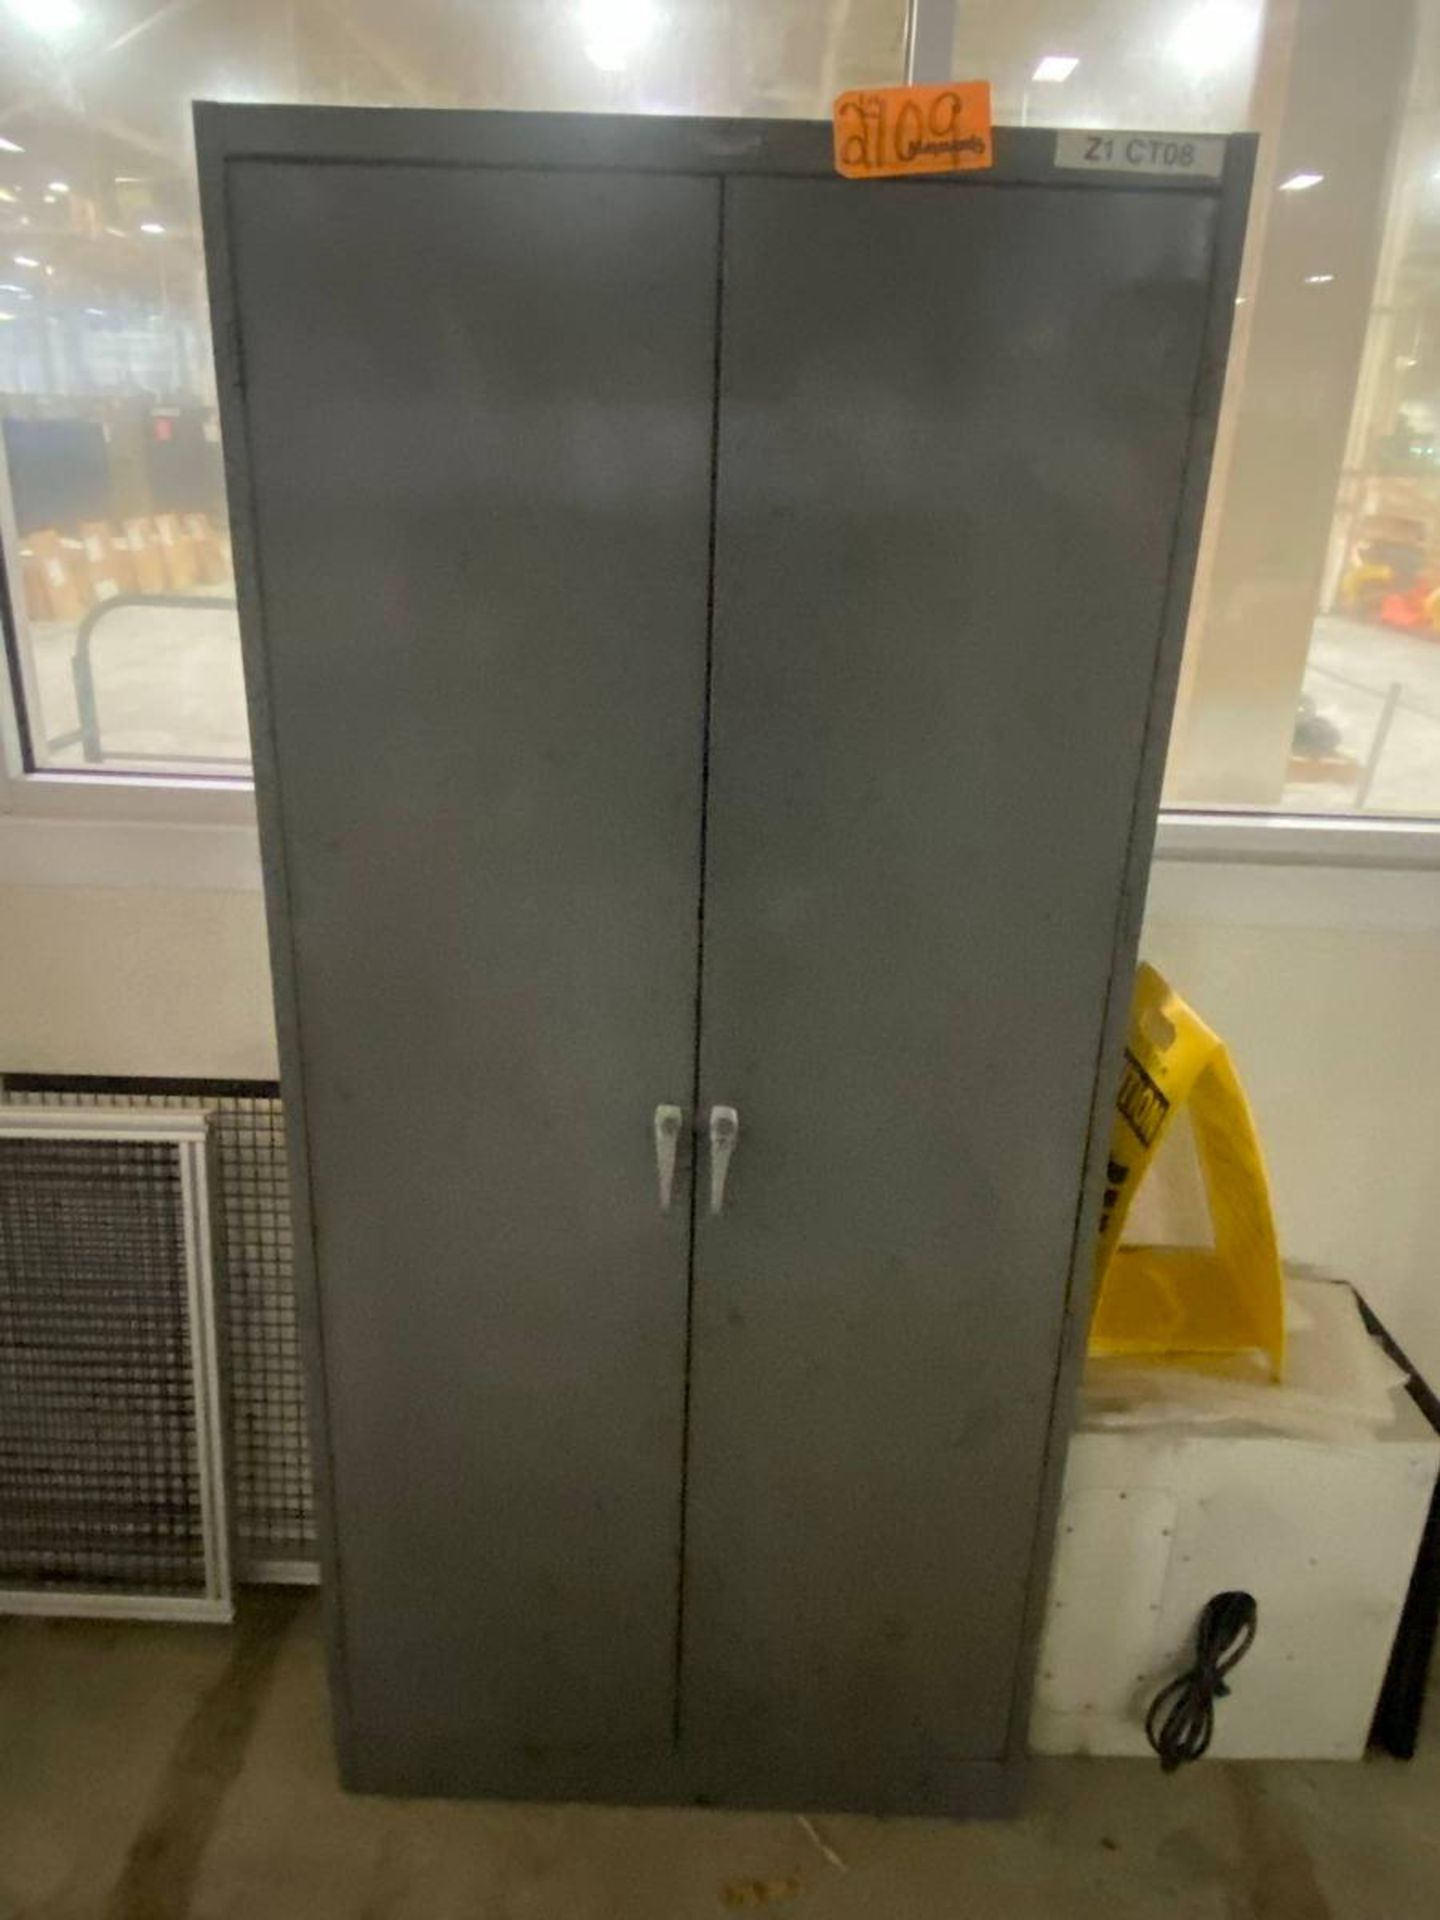 Tennsco (1) Aluminum 2-Door Storage Cabinet - Image 3 of 3